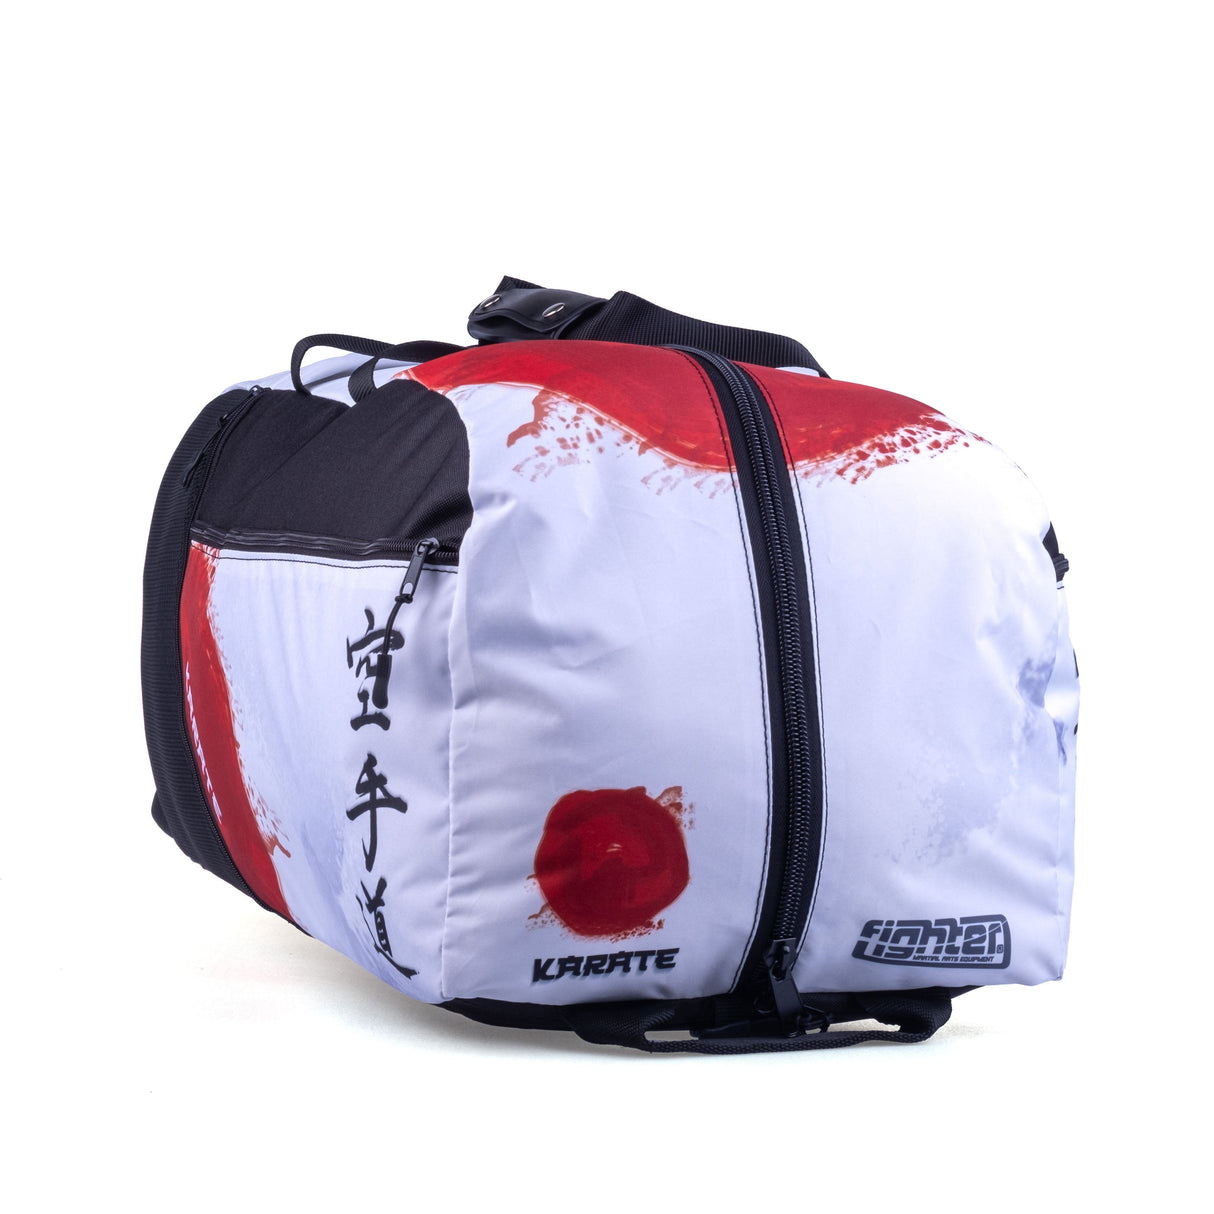 Fighter Sports Bag/Backpack - Karate - white/red, FTS-13-KRT-L